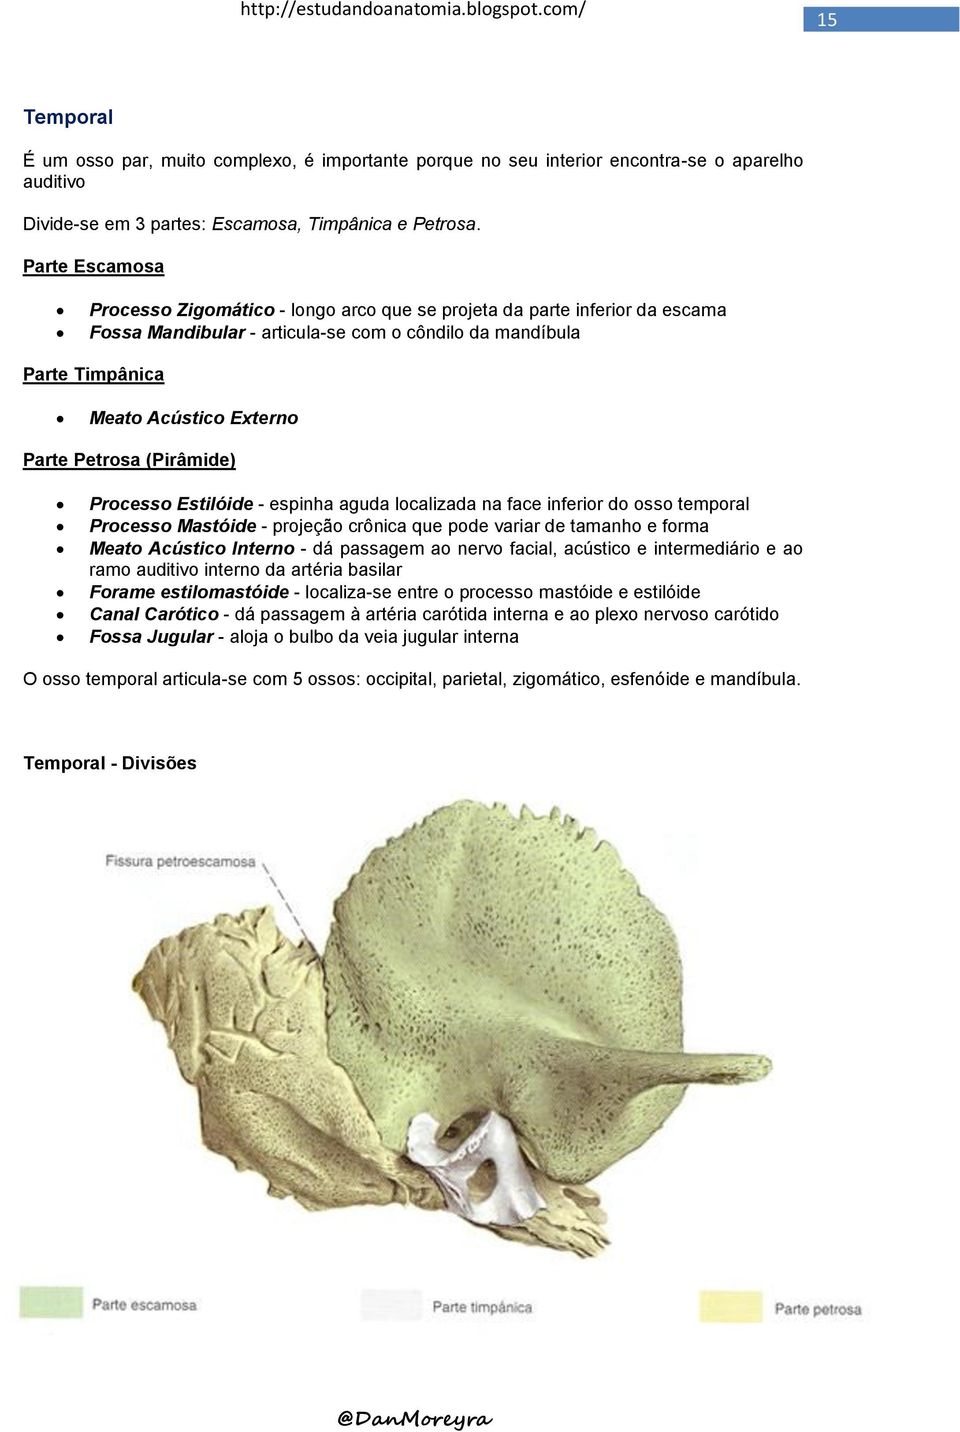 Petrosa (Pirâmide) Processo Estilóide - espinha aguda localizada na face inferior do osso temporal Processo Mastóide - projeção crônica que pode variar de tamanho e forma Meato Acústico Interno - dá